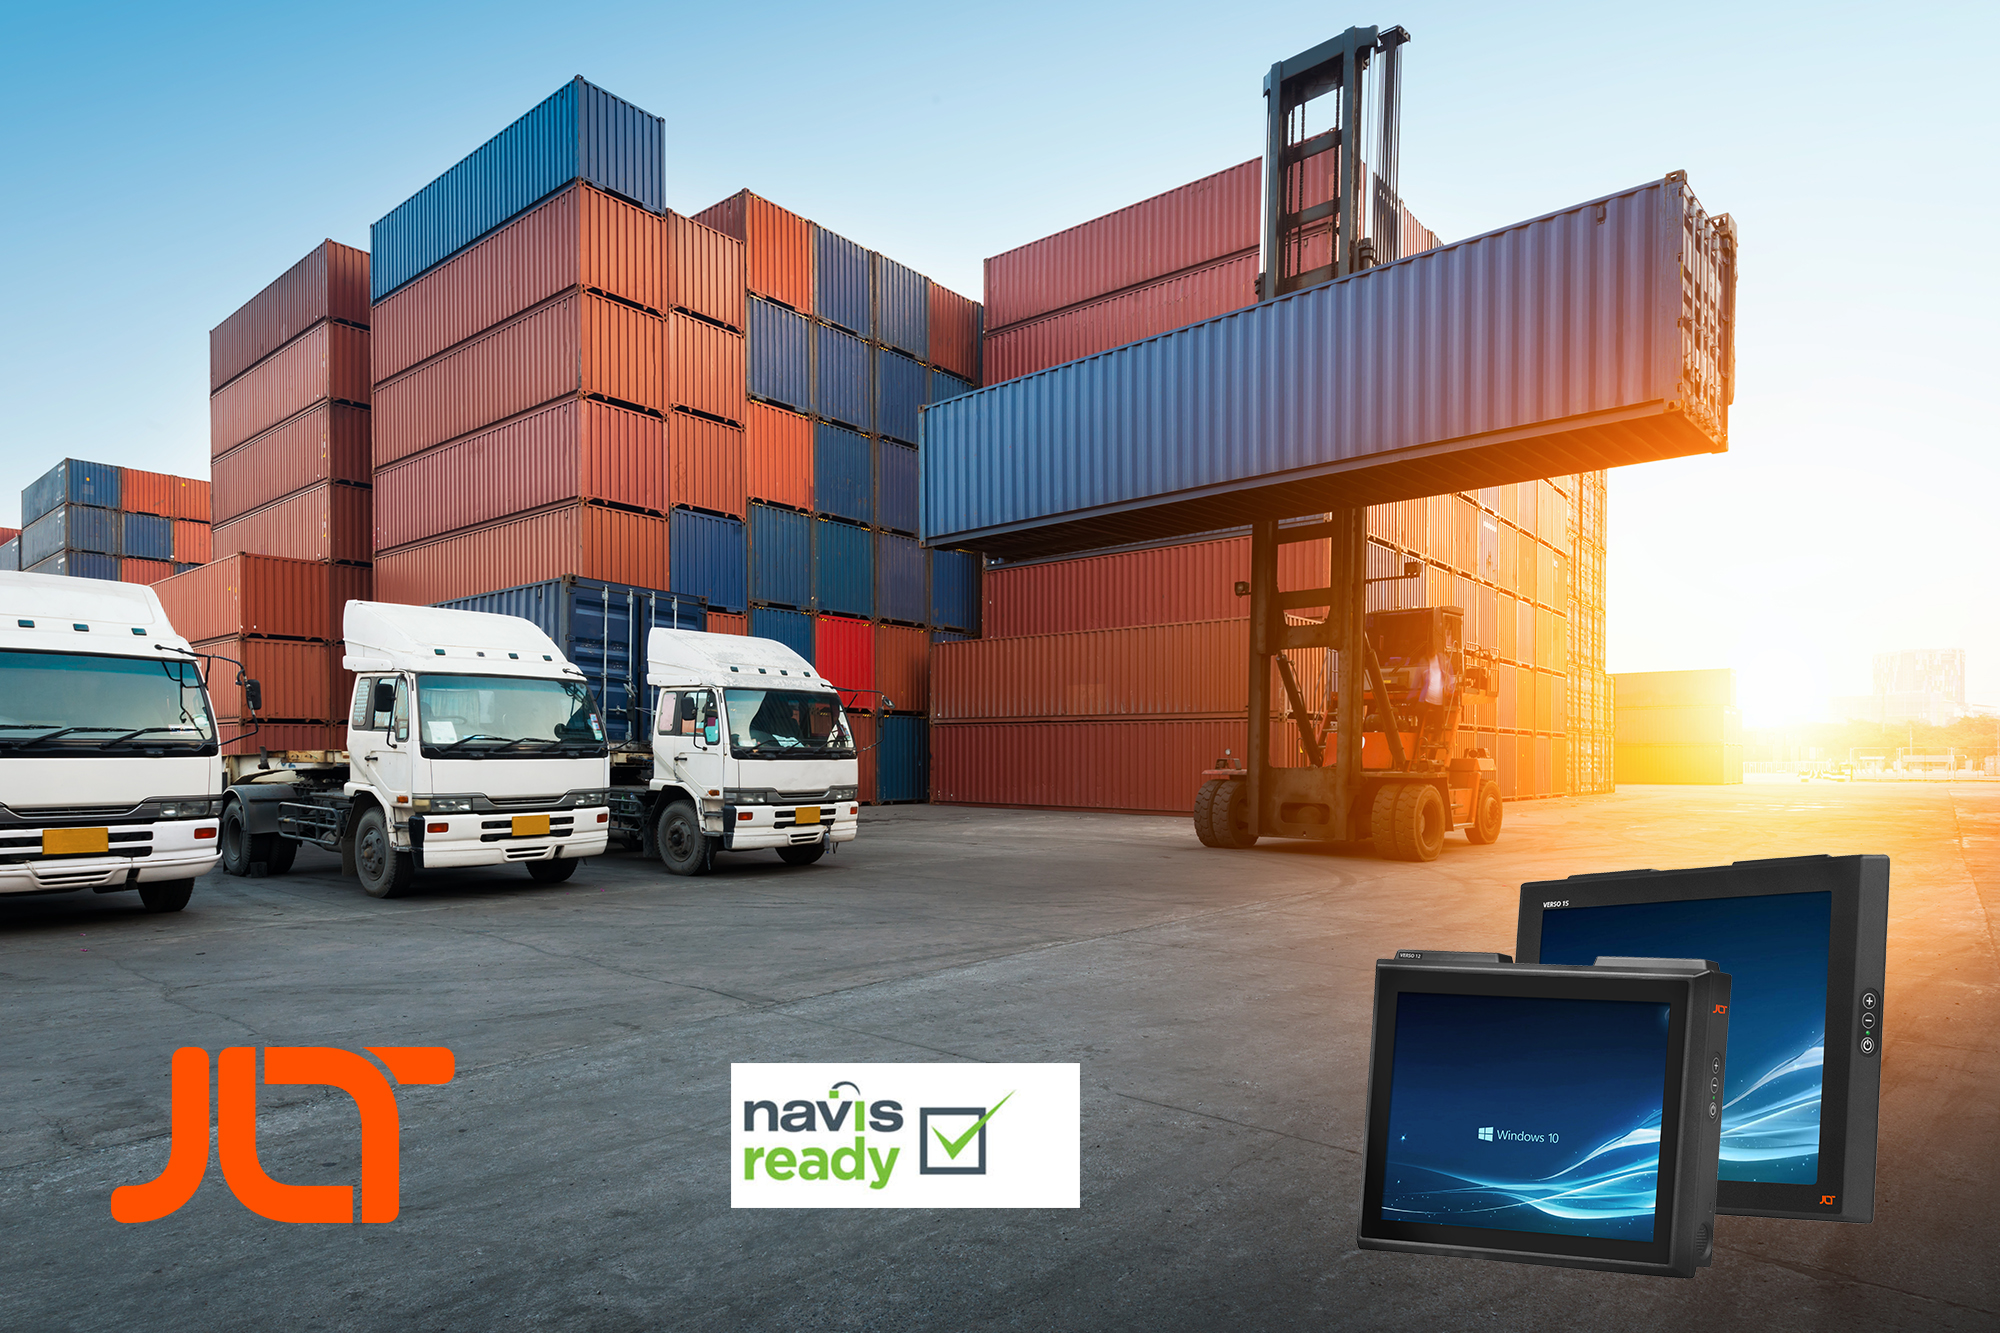 Les ordinateurs Navis Ready JLT VERSO sont homologués pour leur fiabilité et facilité de fonctionnement au service des applications portuaires